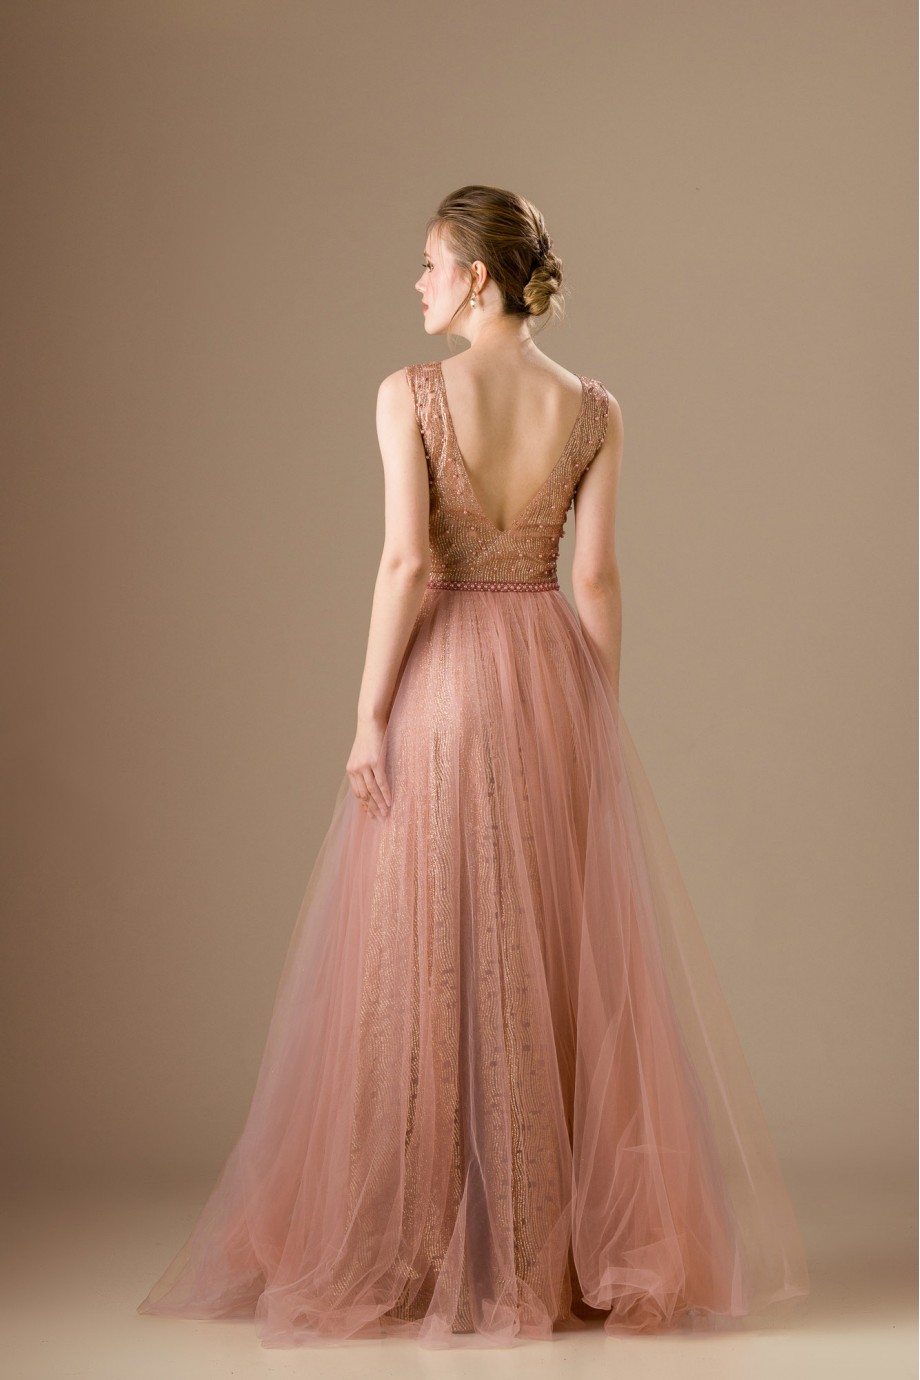 Μακρύ ροζ φόρμα από ελαστικό ύφασμα